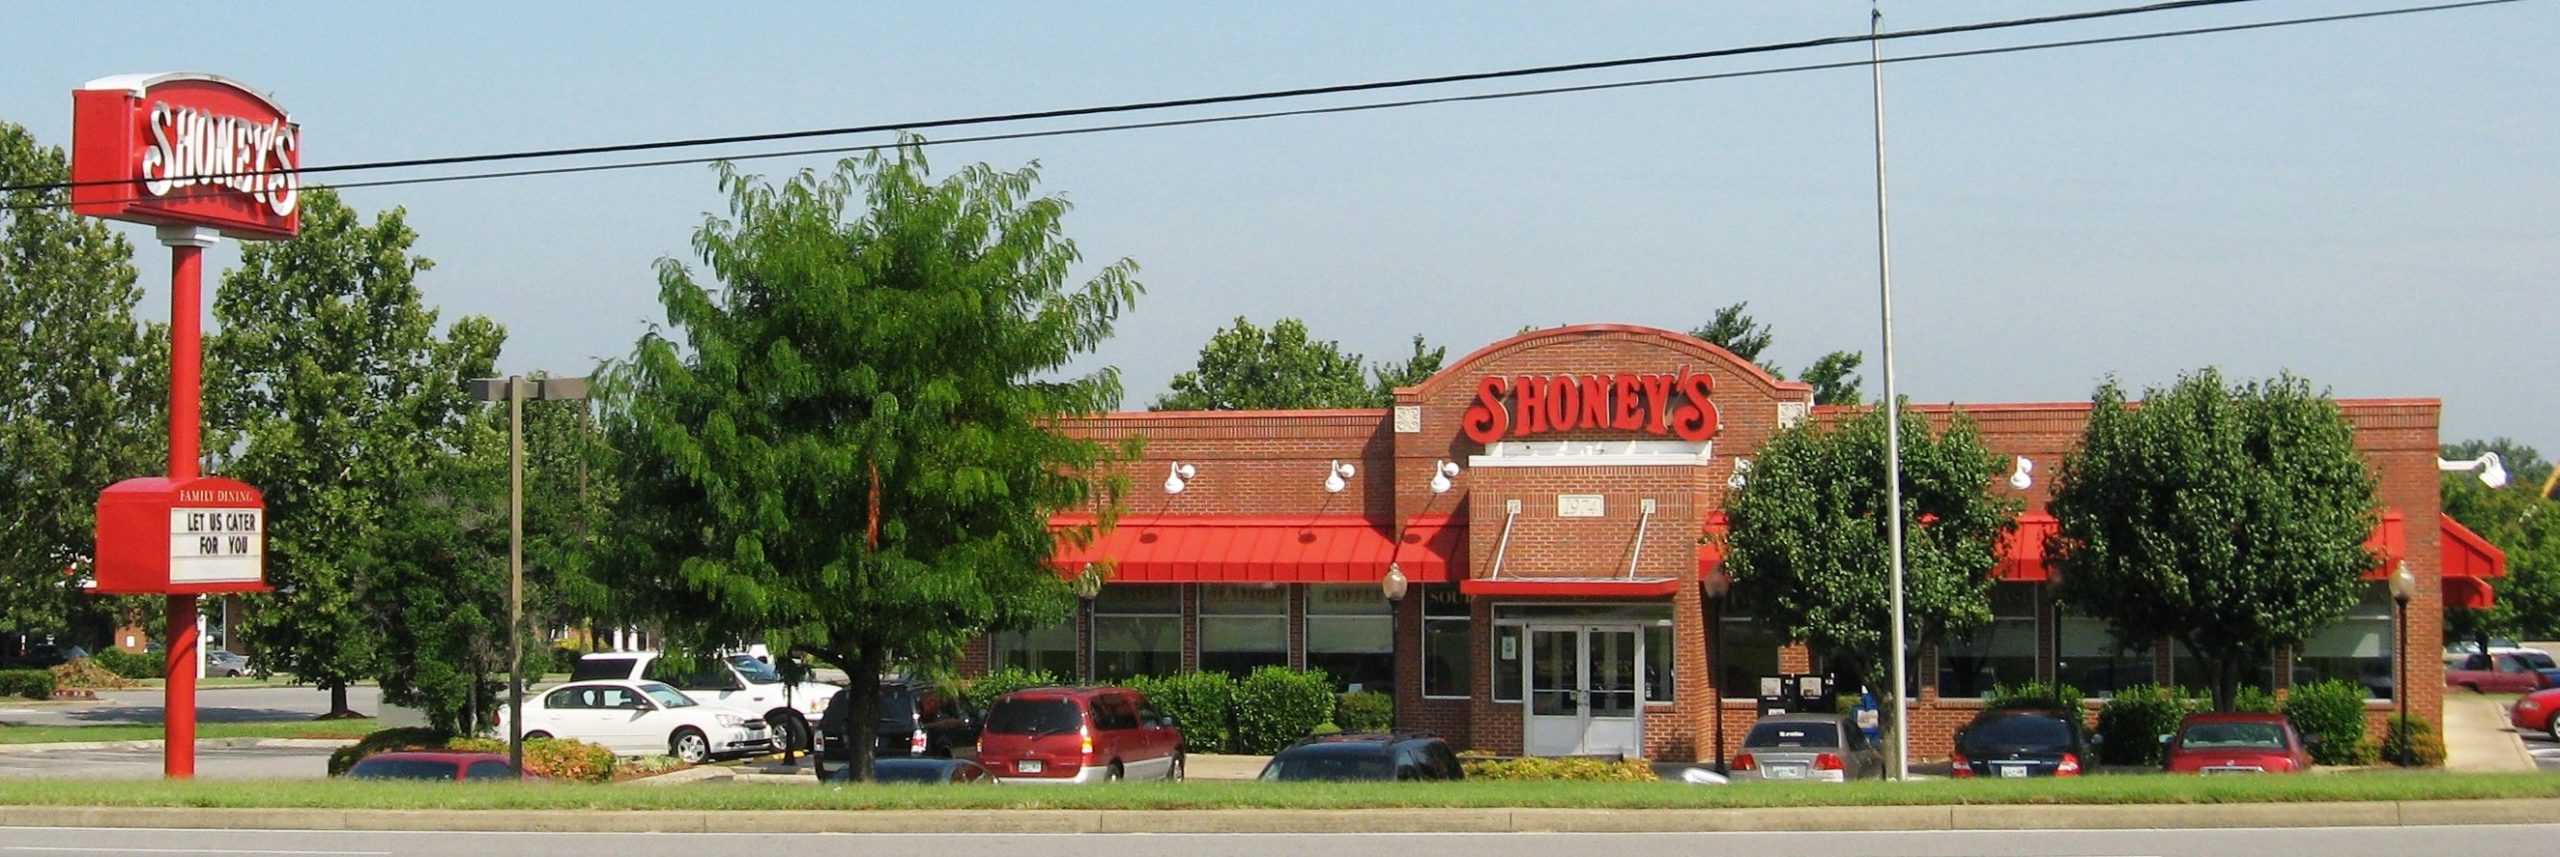 A Shoney's restaurant location | Wikimedia Commons